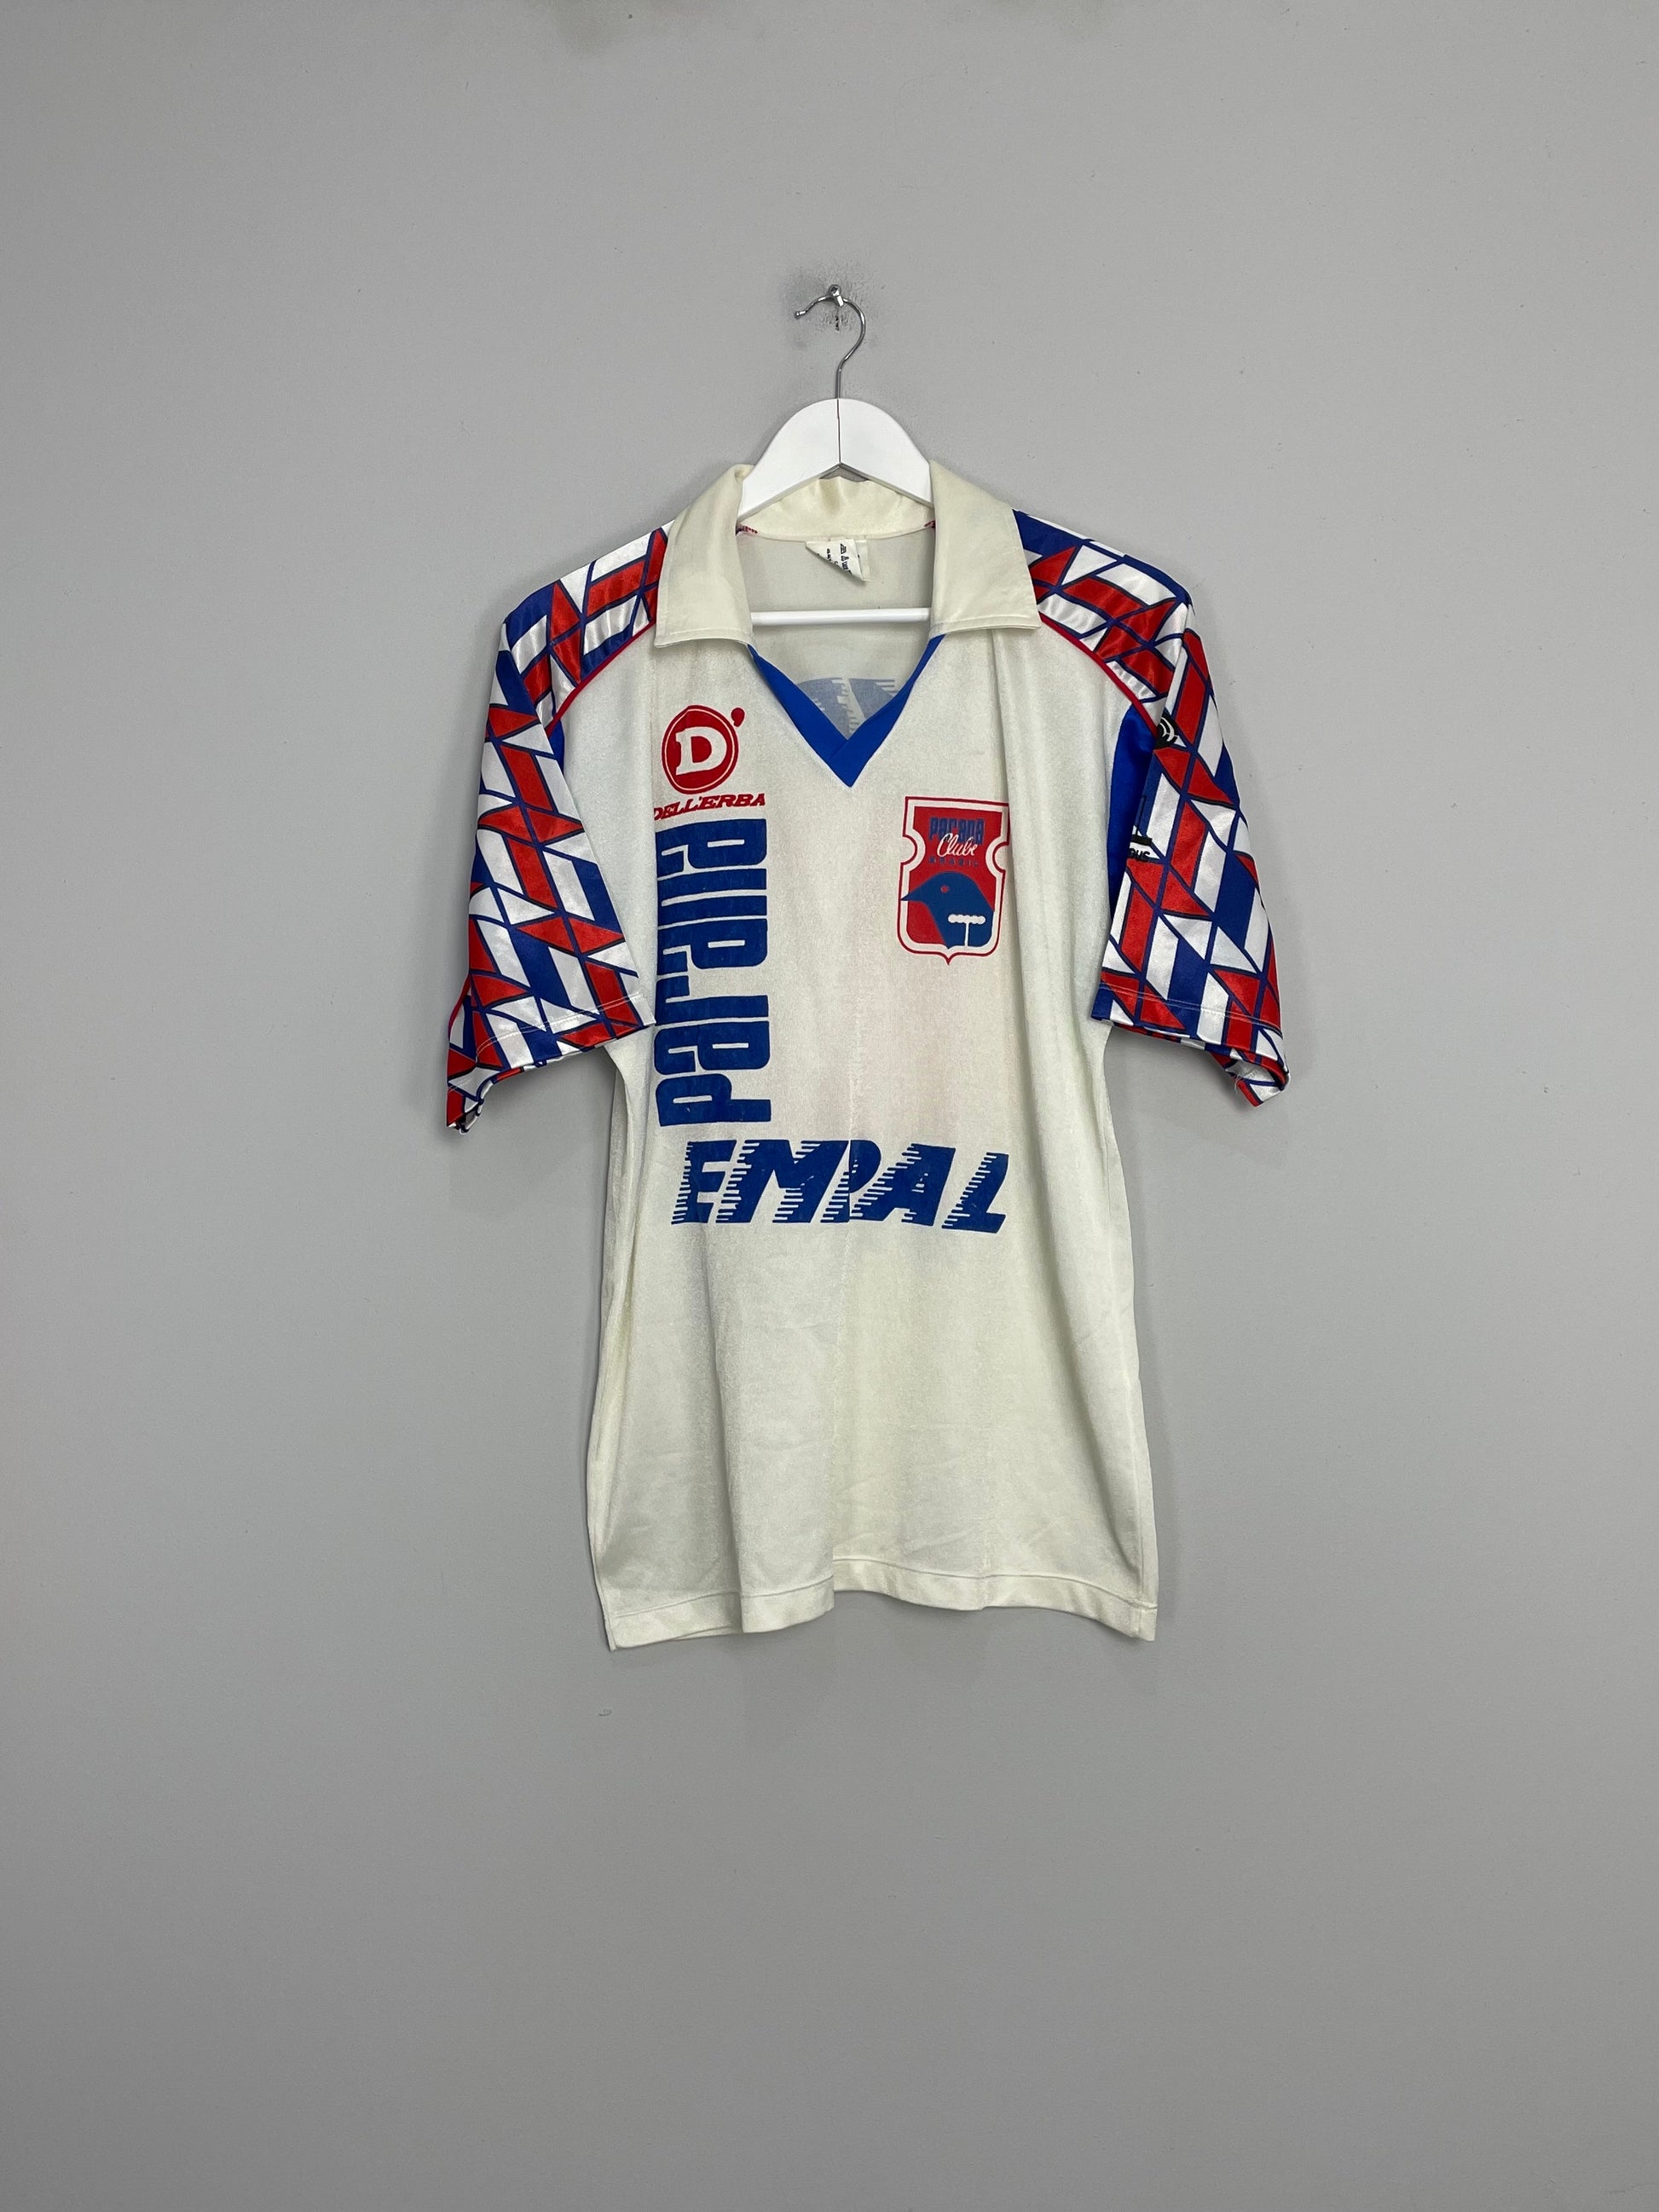 Imafe of the Parana shirt from the 1992/93 season